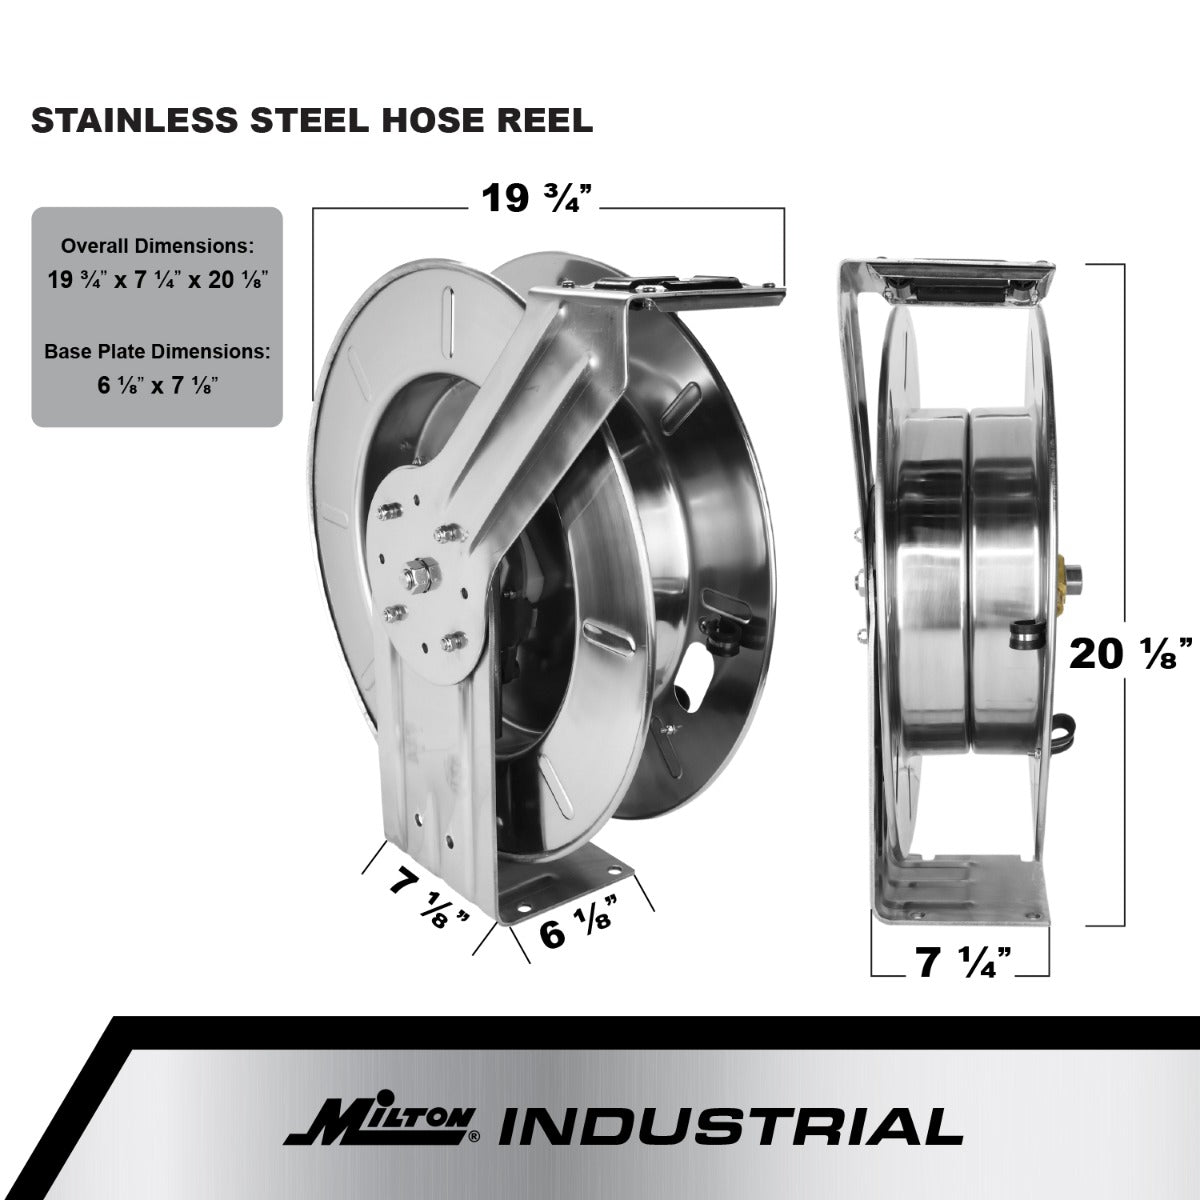 Industrial Stainless Steel Hose Reel Retractable, 1/2